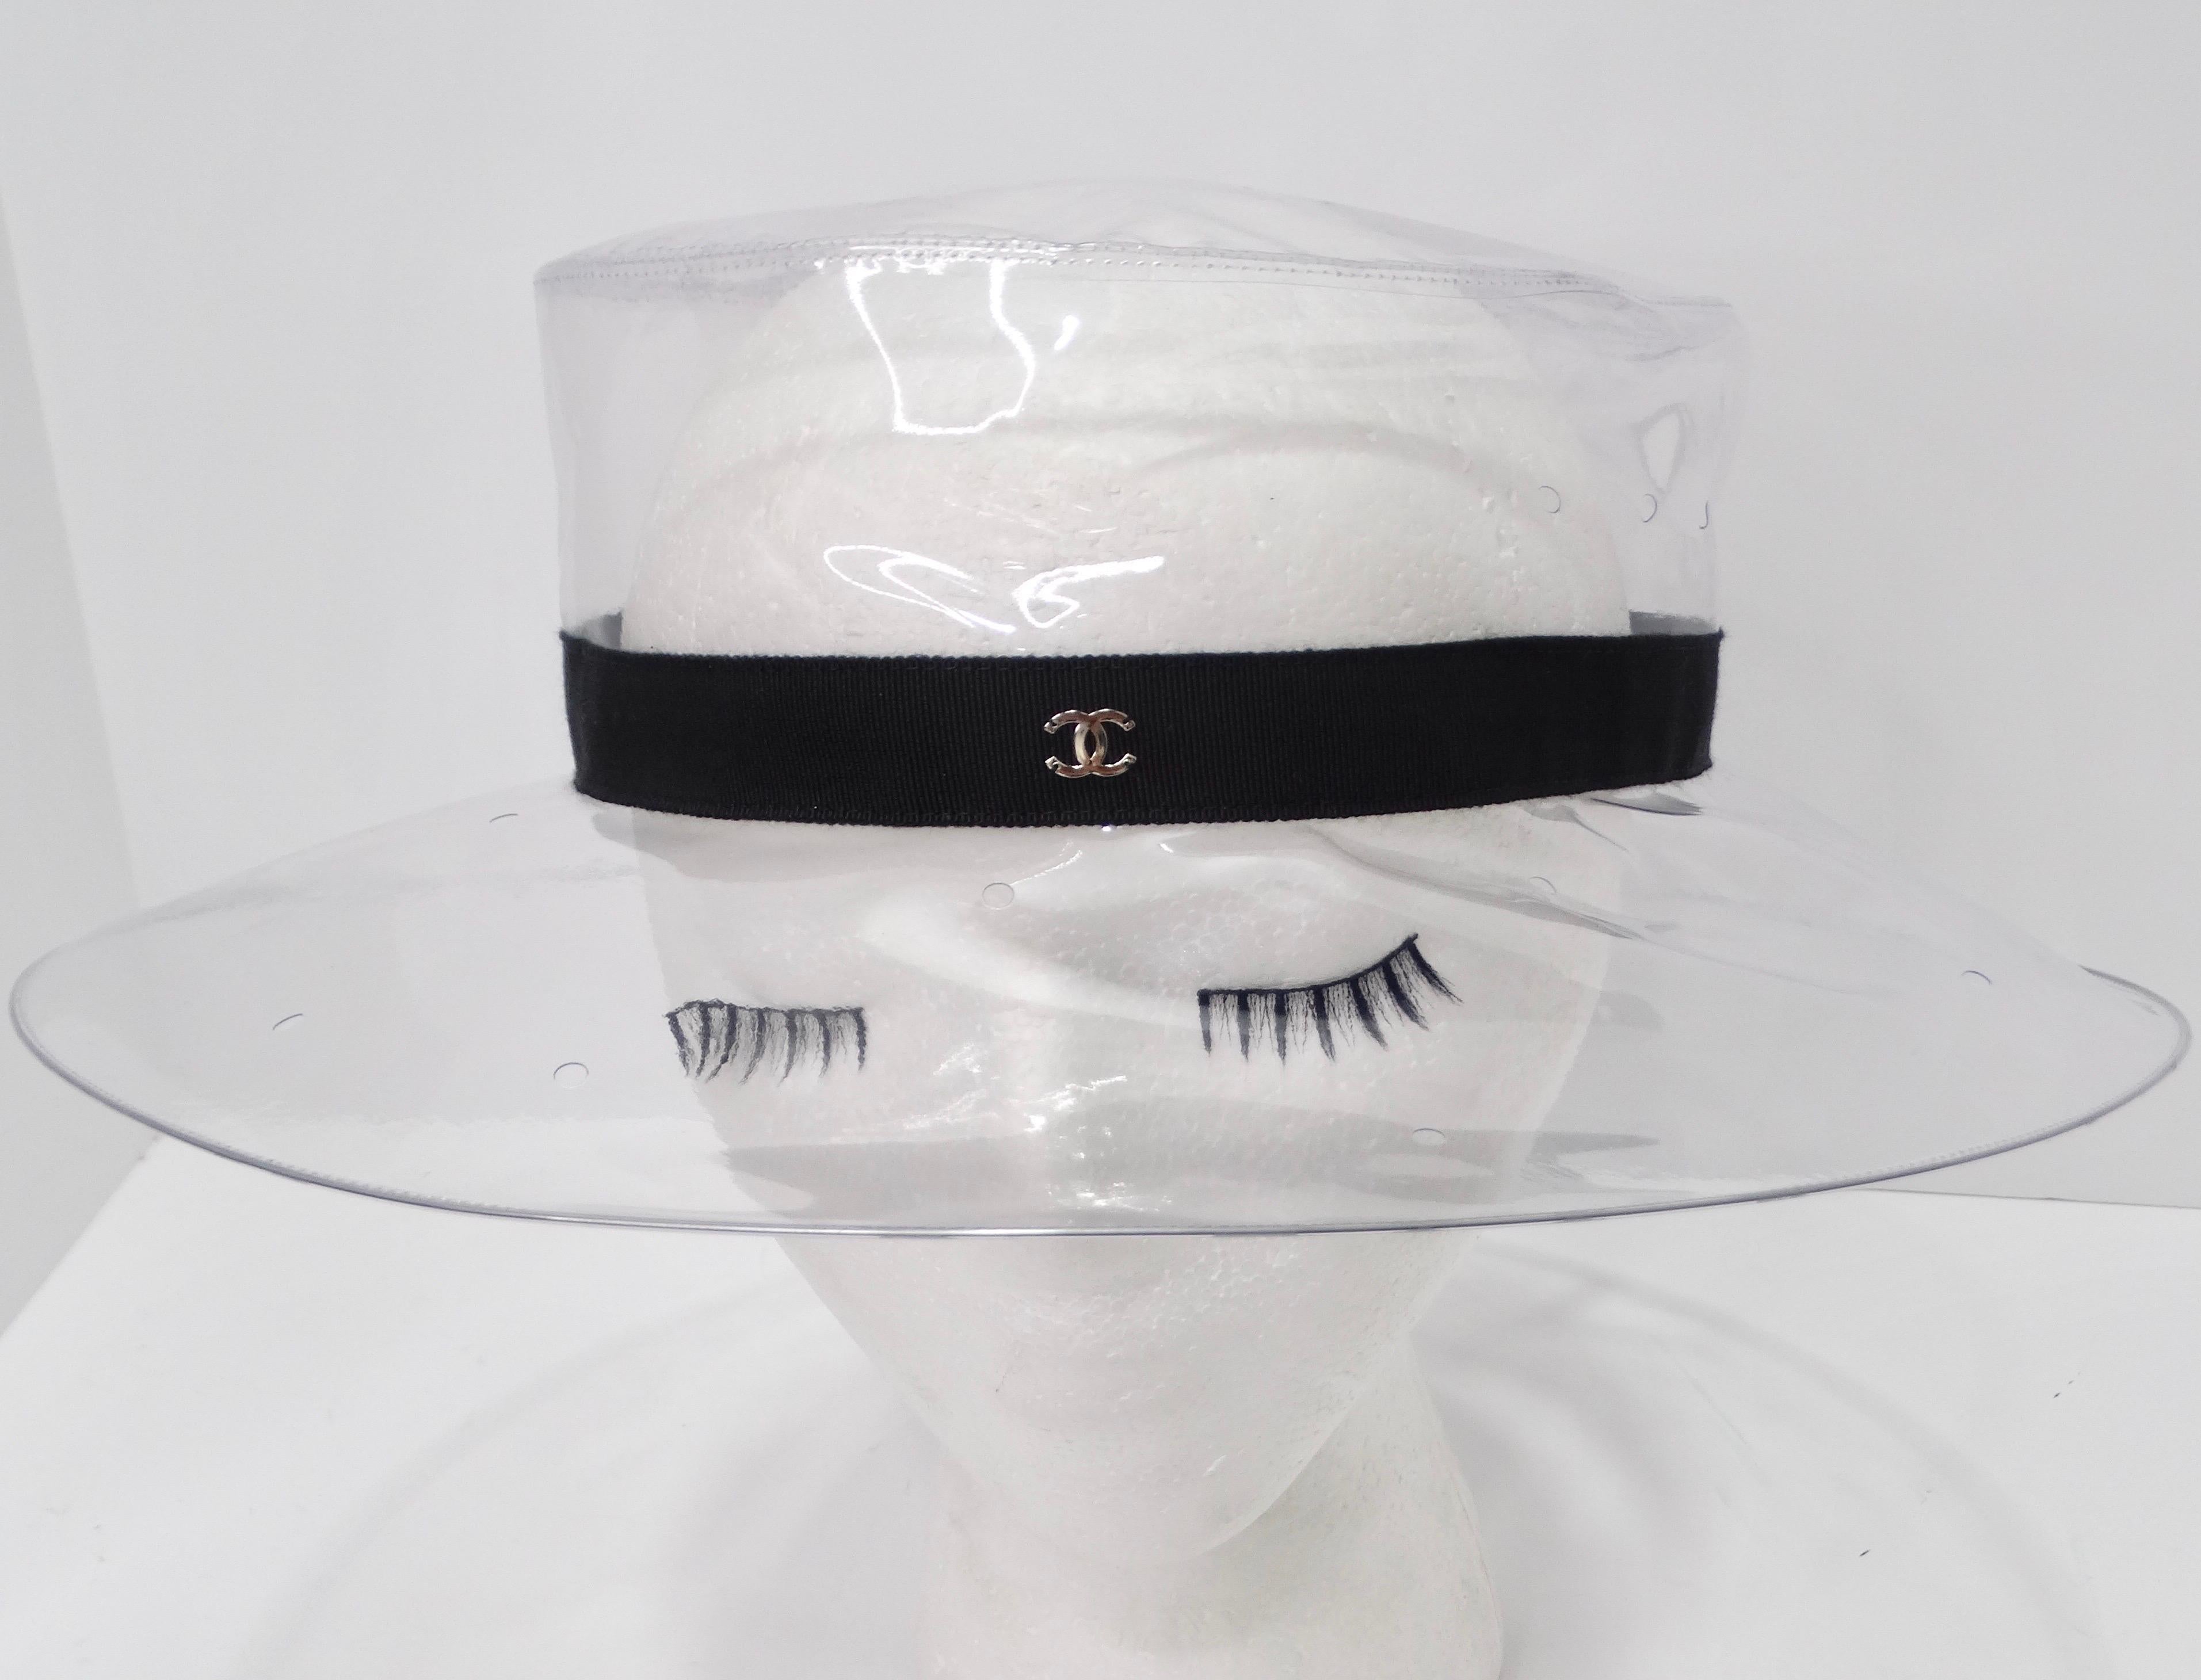 Entrez dans le royaume de la haute couture avec ce chapeau de soleil Chanel 2018 en PVC transparent, un accessoire indispensable pour les personnes soucieuses de leur style. Ce chapeau de soleil exquis est orné d'un ruban noir élégamment enroulé